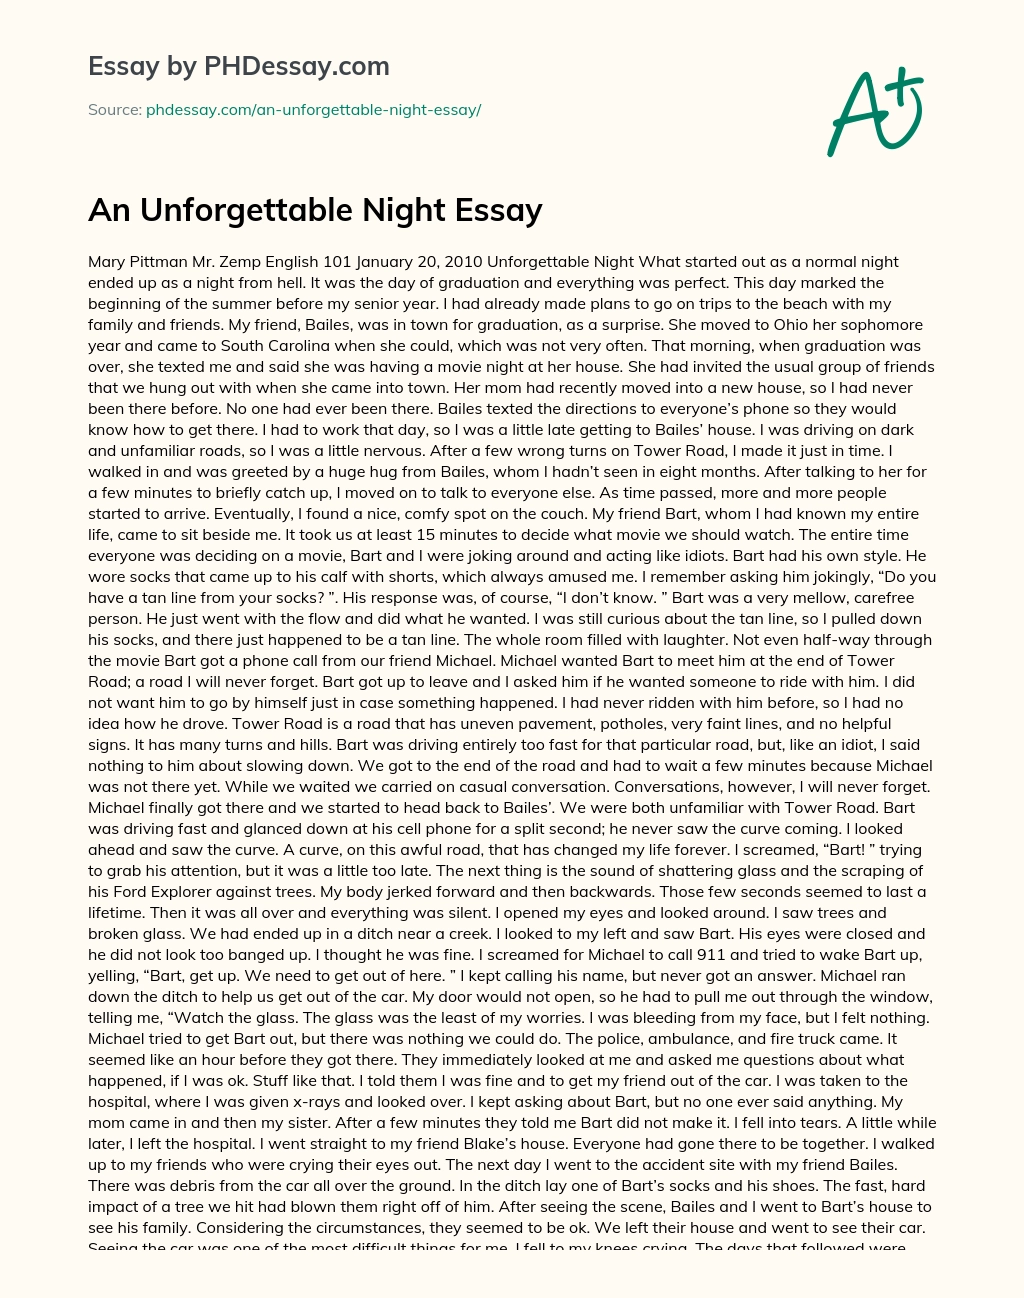 An Unforgettable Night Essay essay